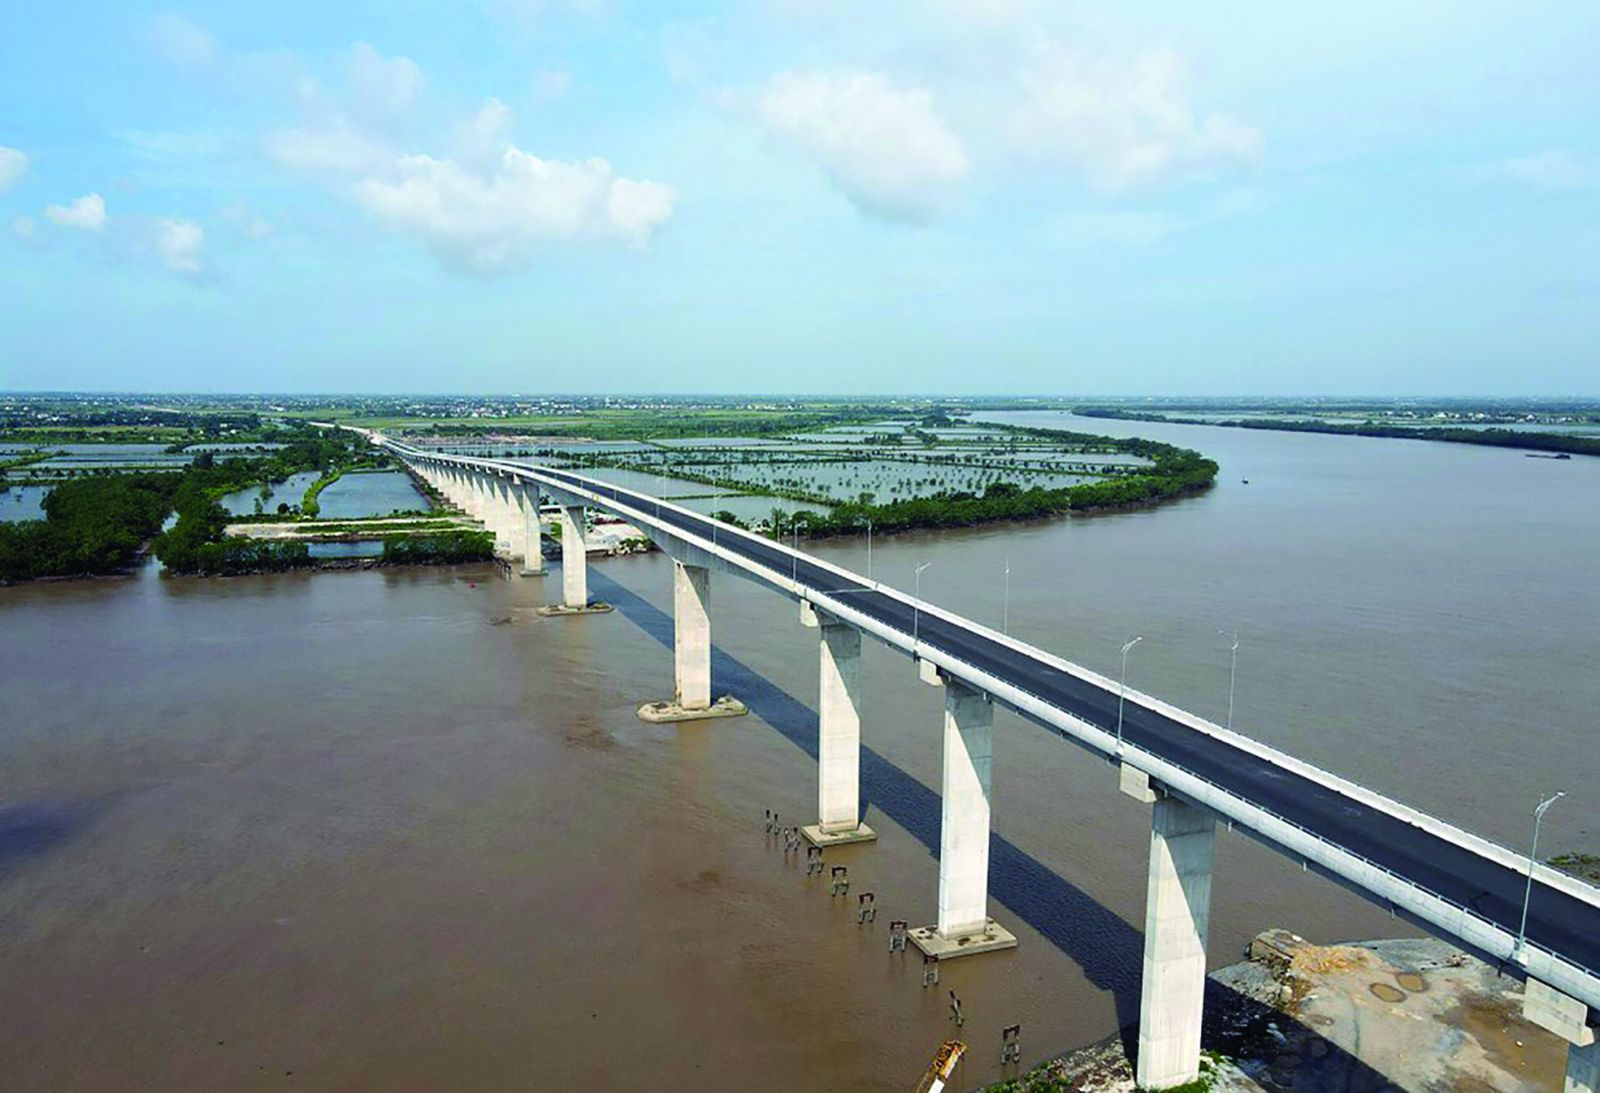  Cầu vượt sông Văn Úc dài 2,24 km nối huyện Kiến Thuỵ với huyện Tiên Lãng đã cơ bản hoàn thành